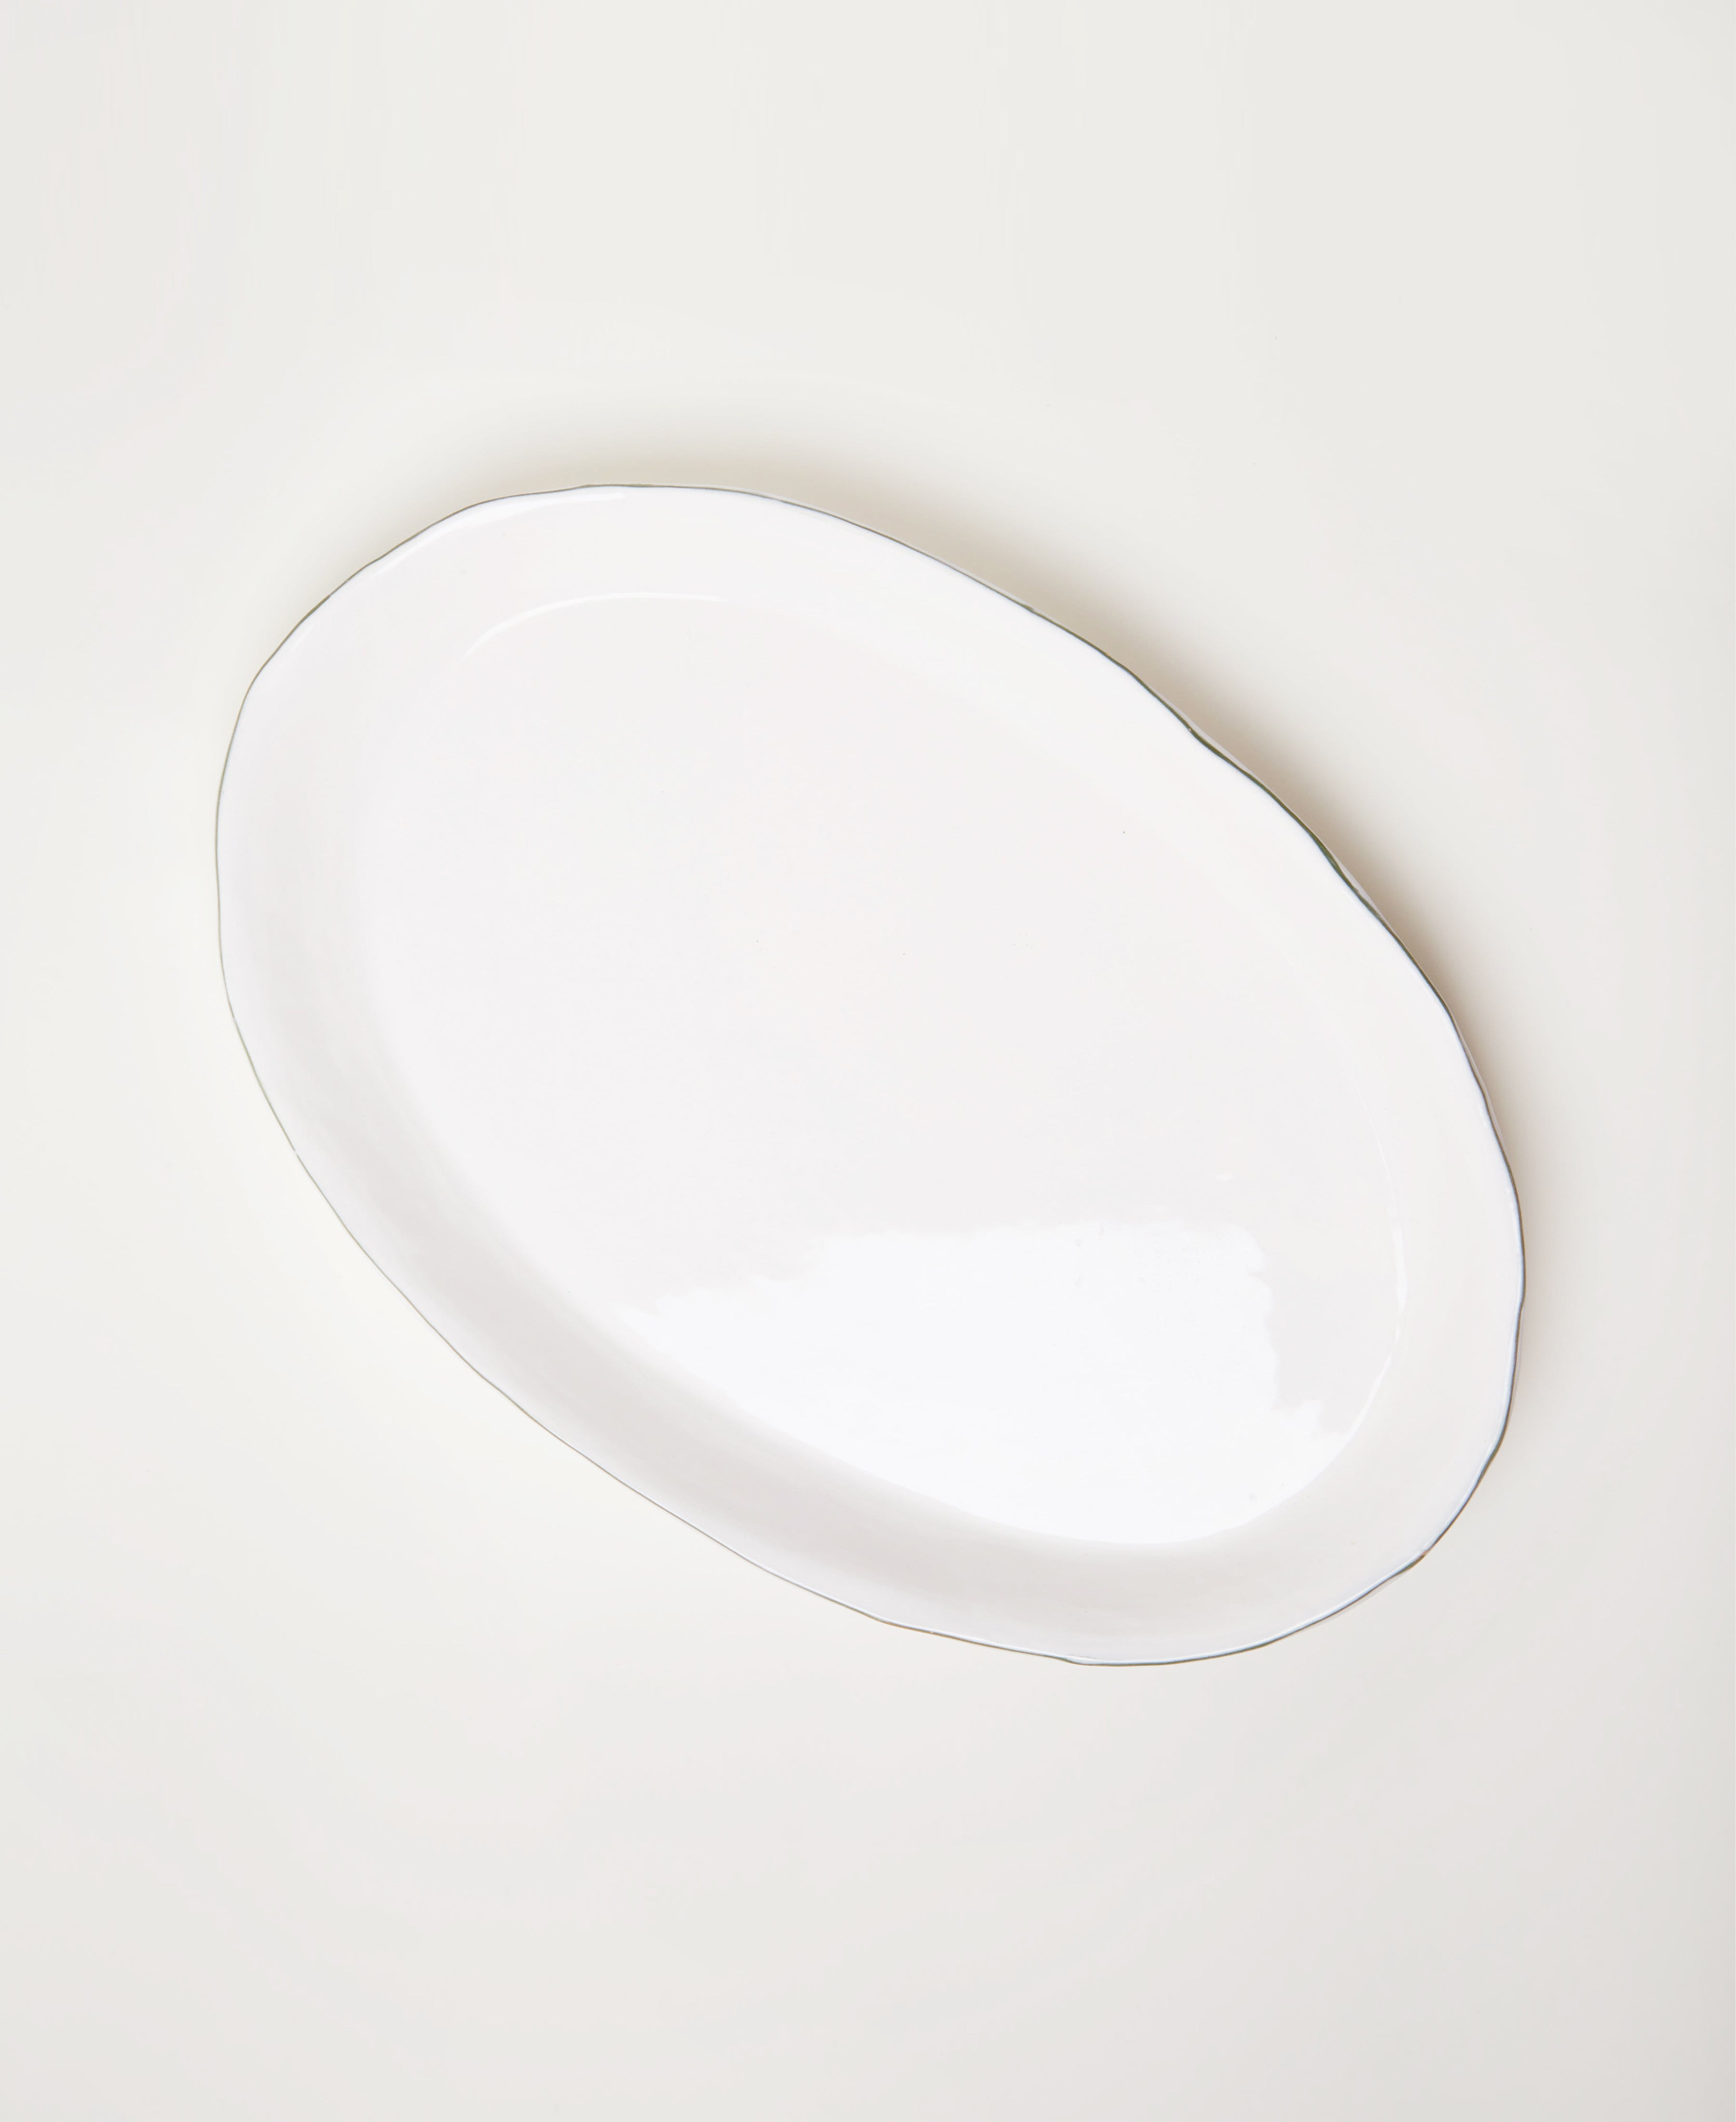   Deep Oval Serving Platter  